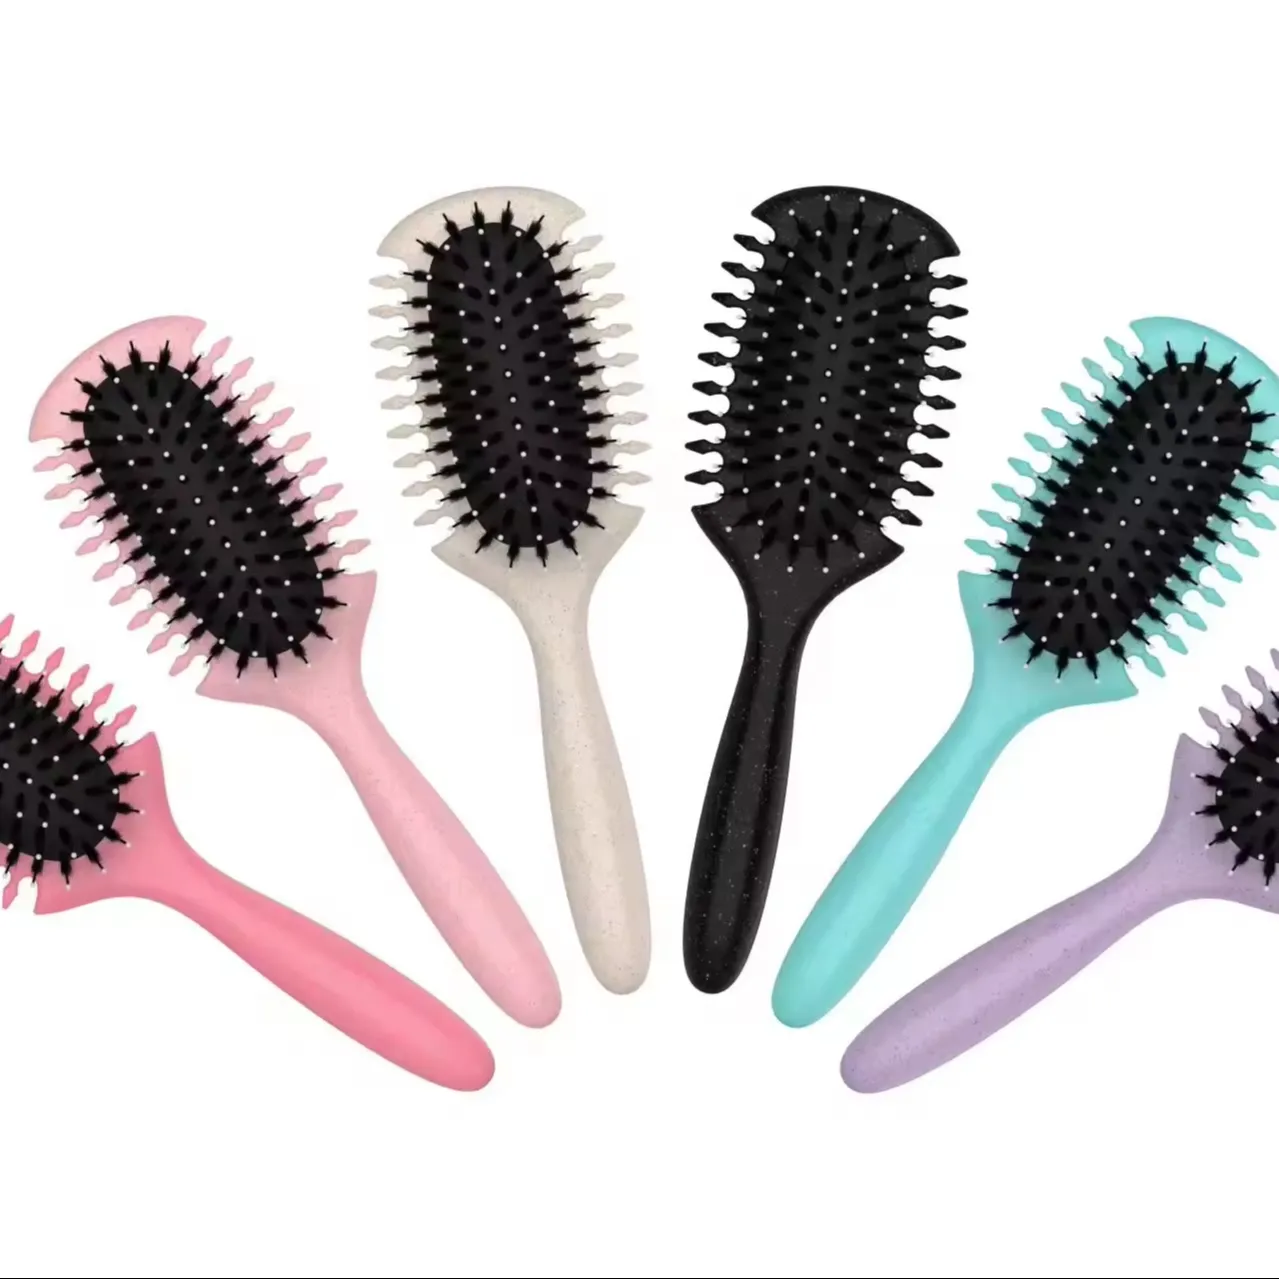 OEM produttore di nuovo Design spazzola per capelli ricci rimbalzo che definisce spazzola applicabile pettine pettine spazzola per capelli ricci per le donne e gli uomini